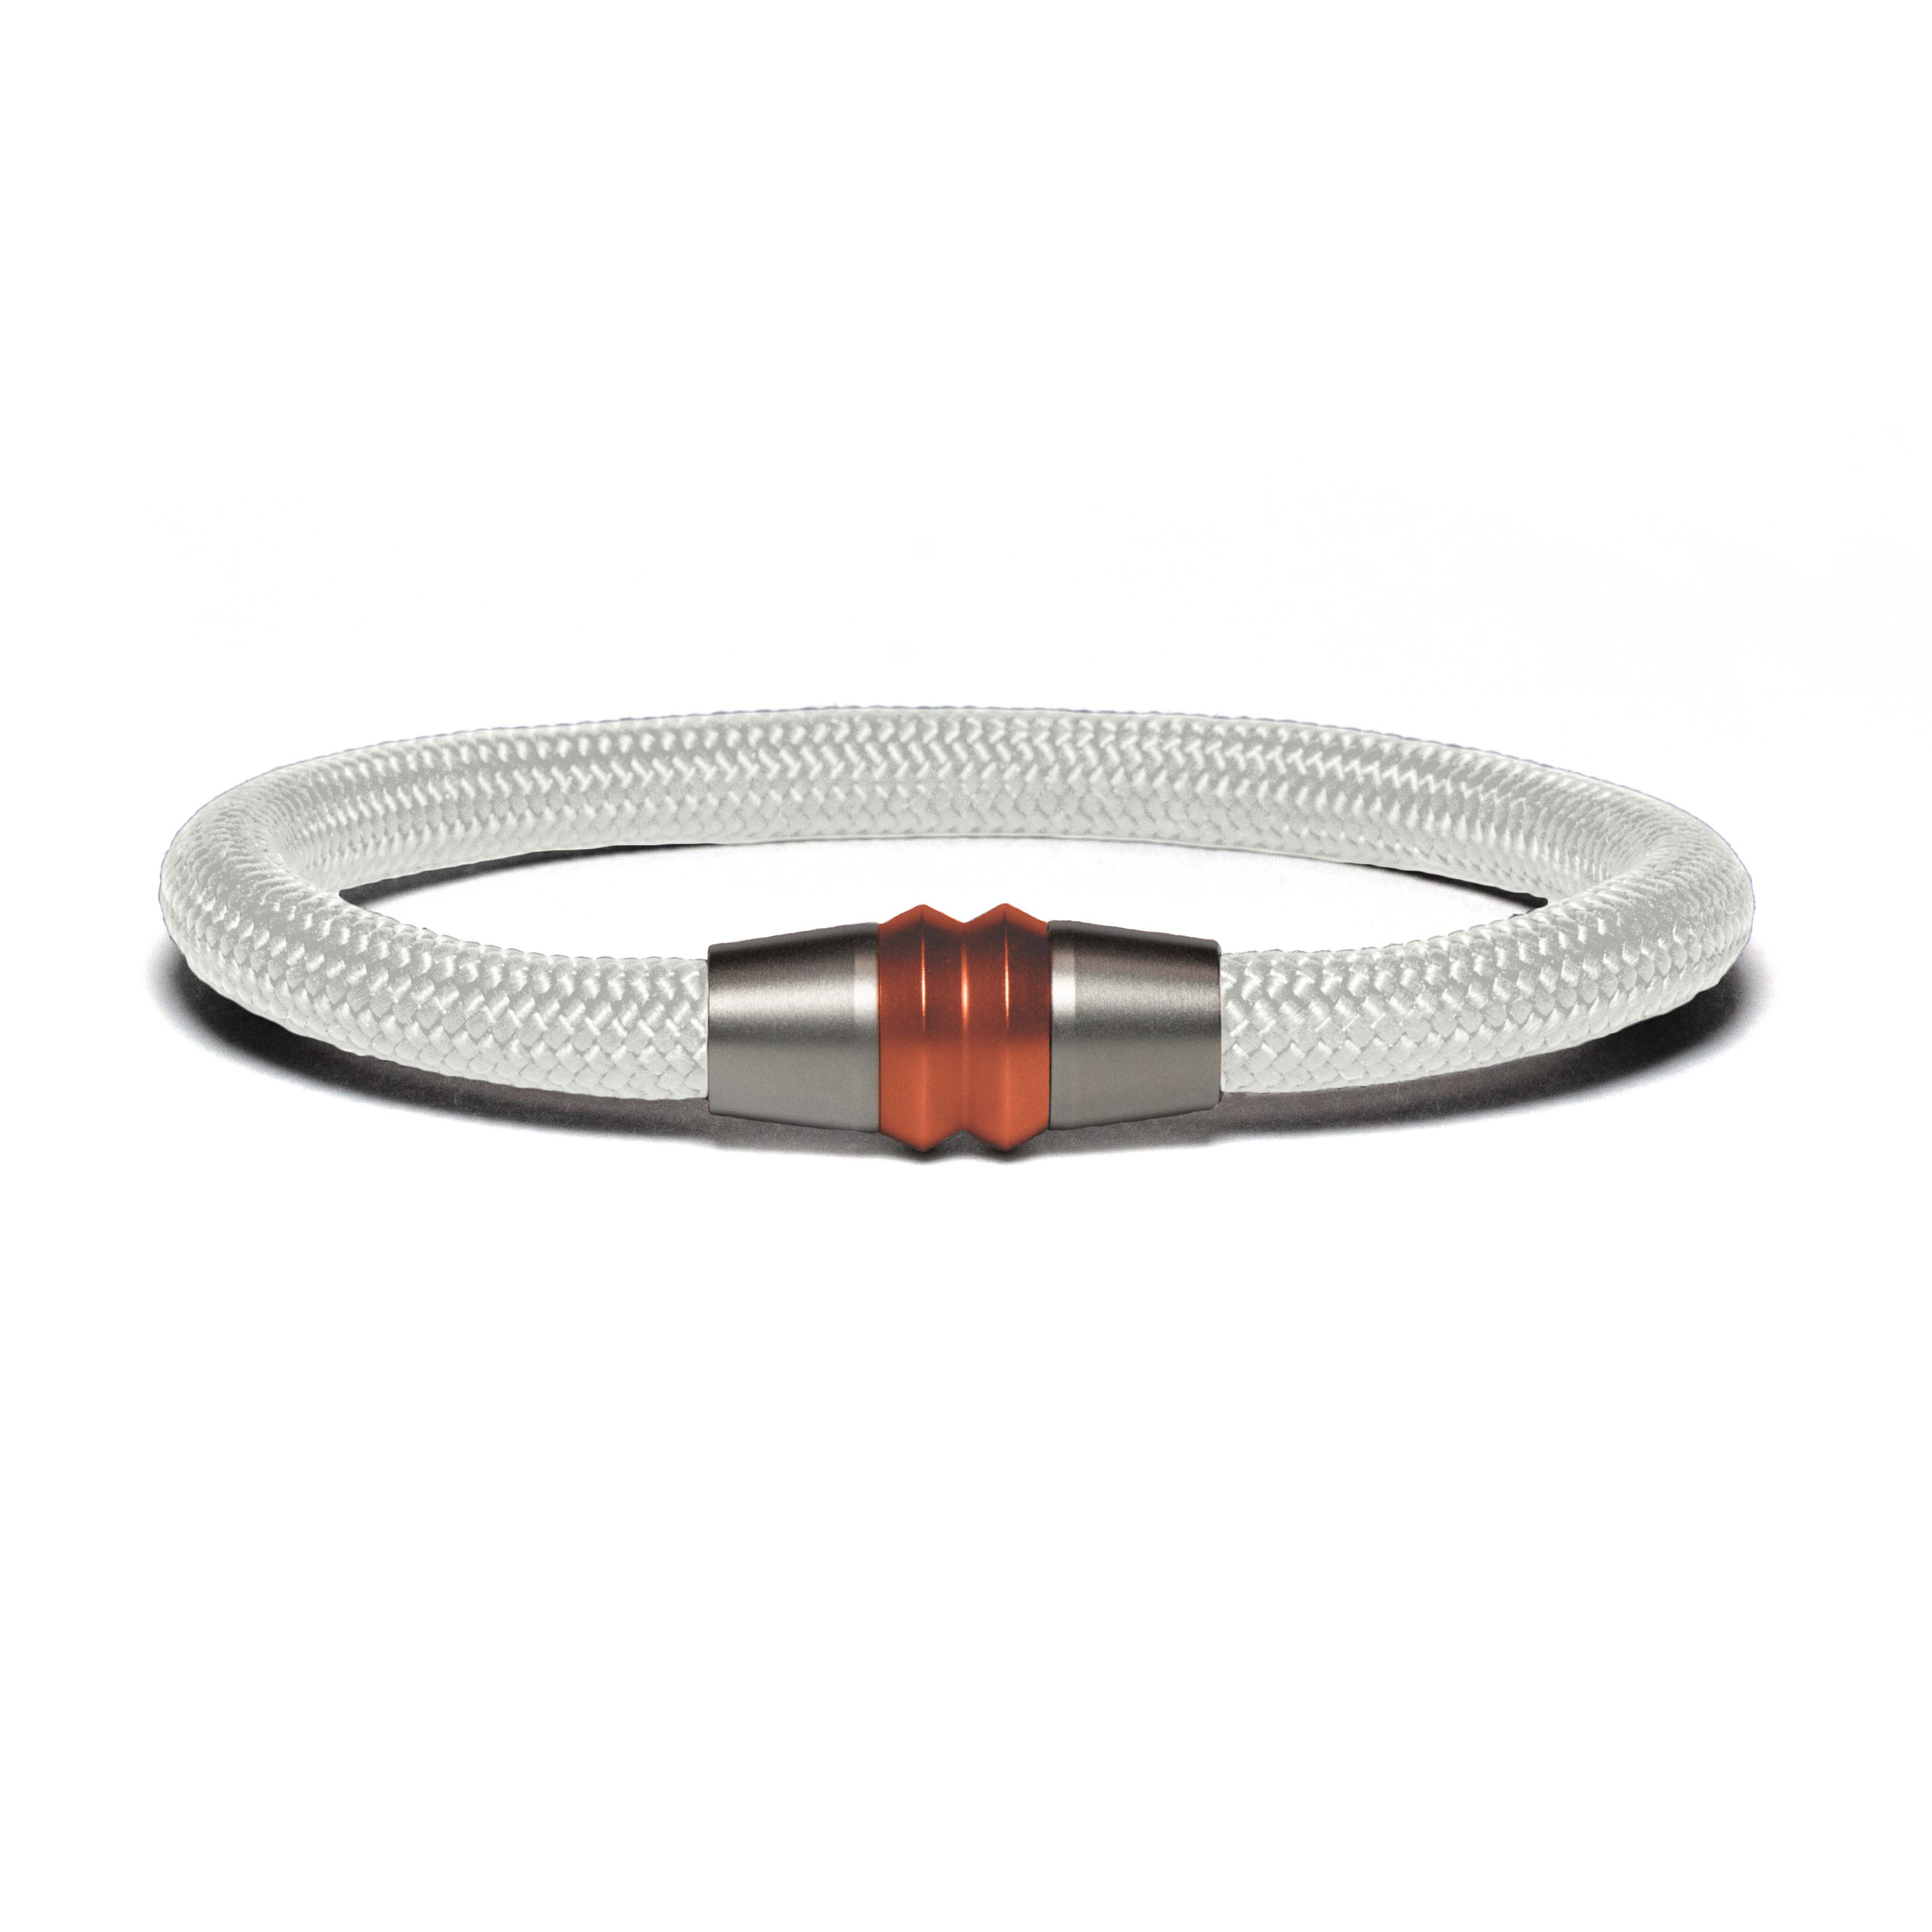 Bracelet bi-color copper - Paracord white